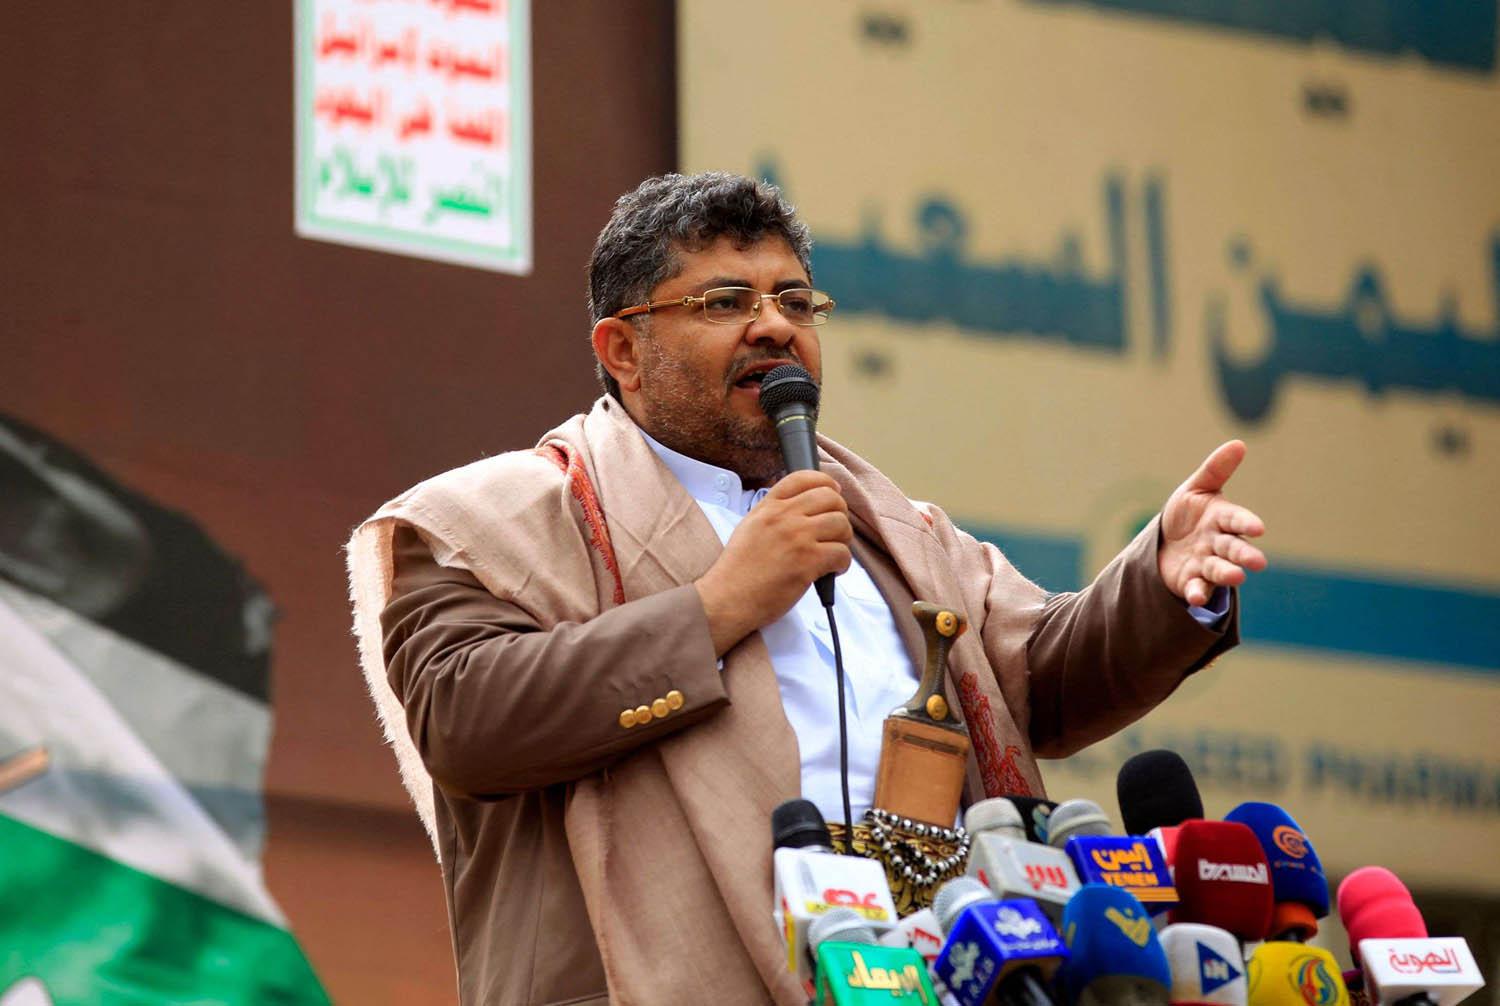 محمد علي الحوثي الرئيس السابق لشورى حركة الحوثي في اليمن يلقي كلمة في تجمع في صنعاء